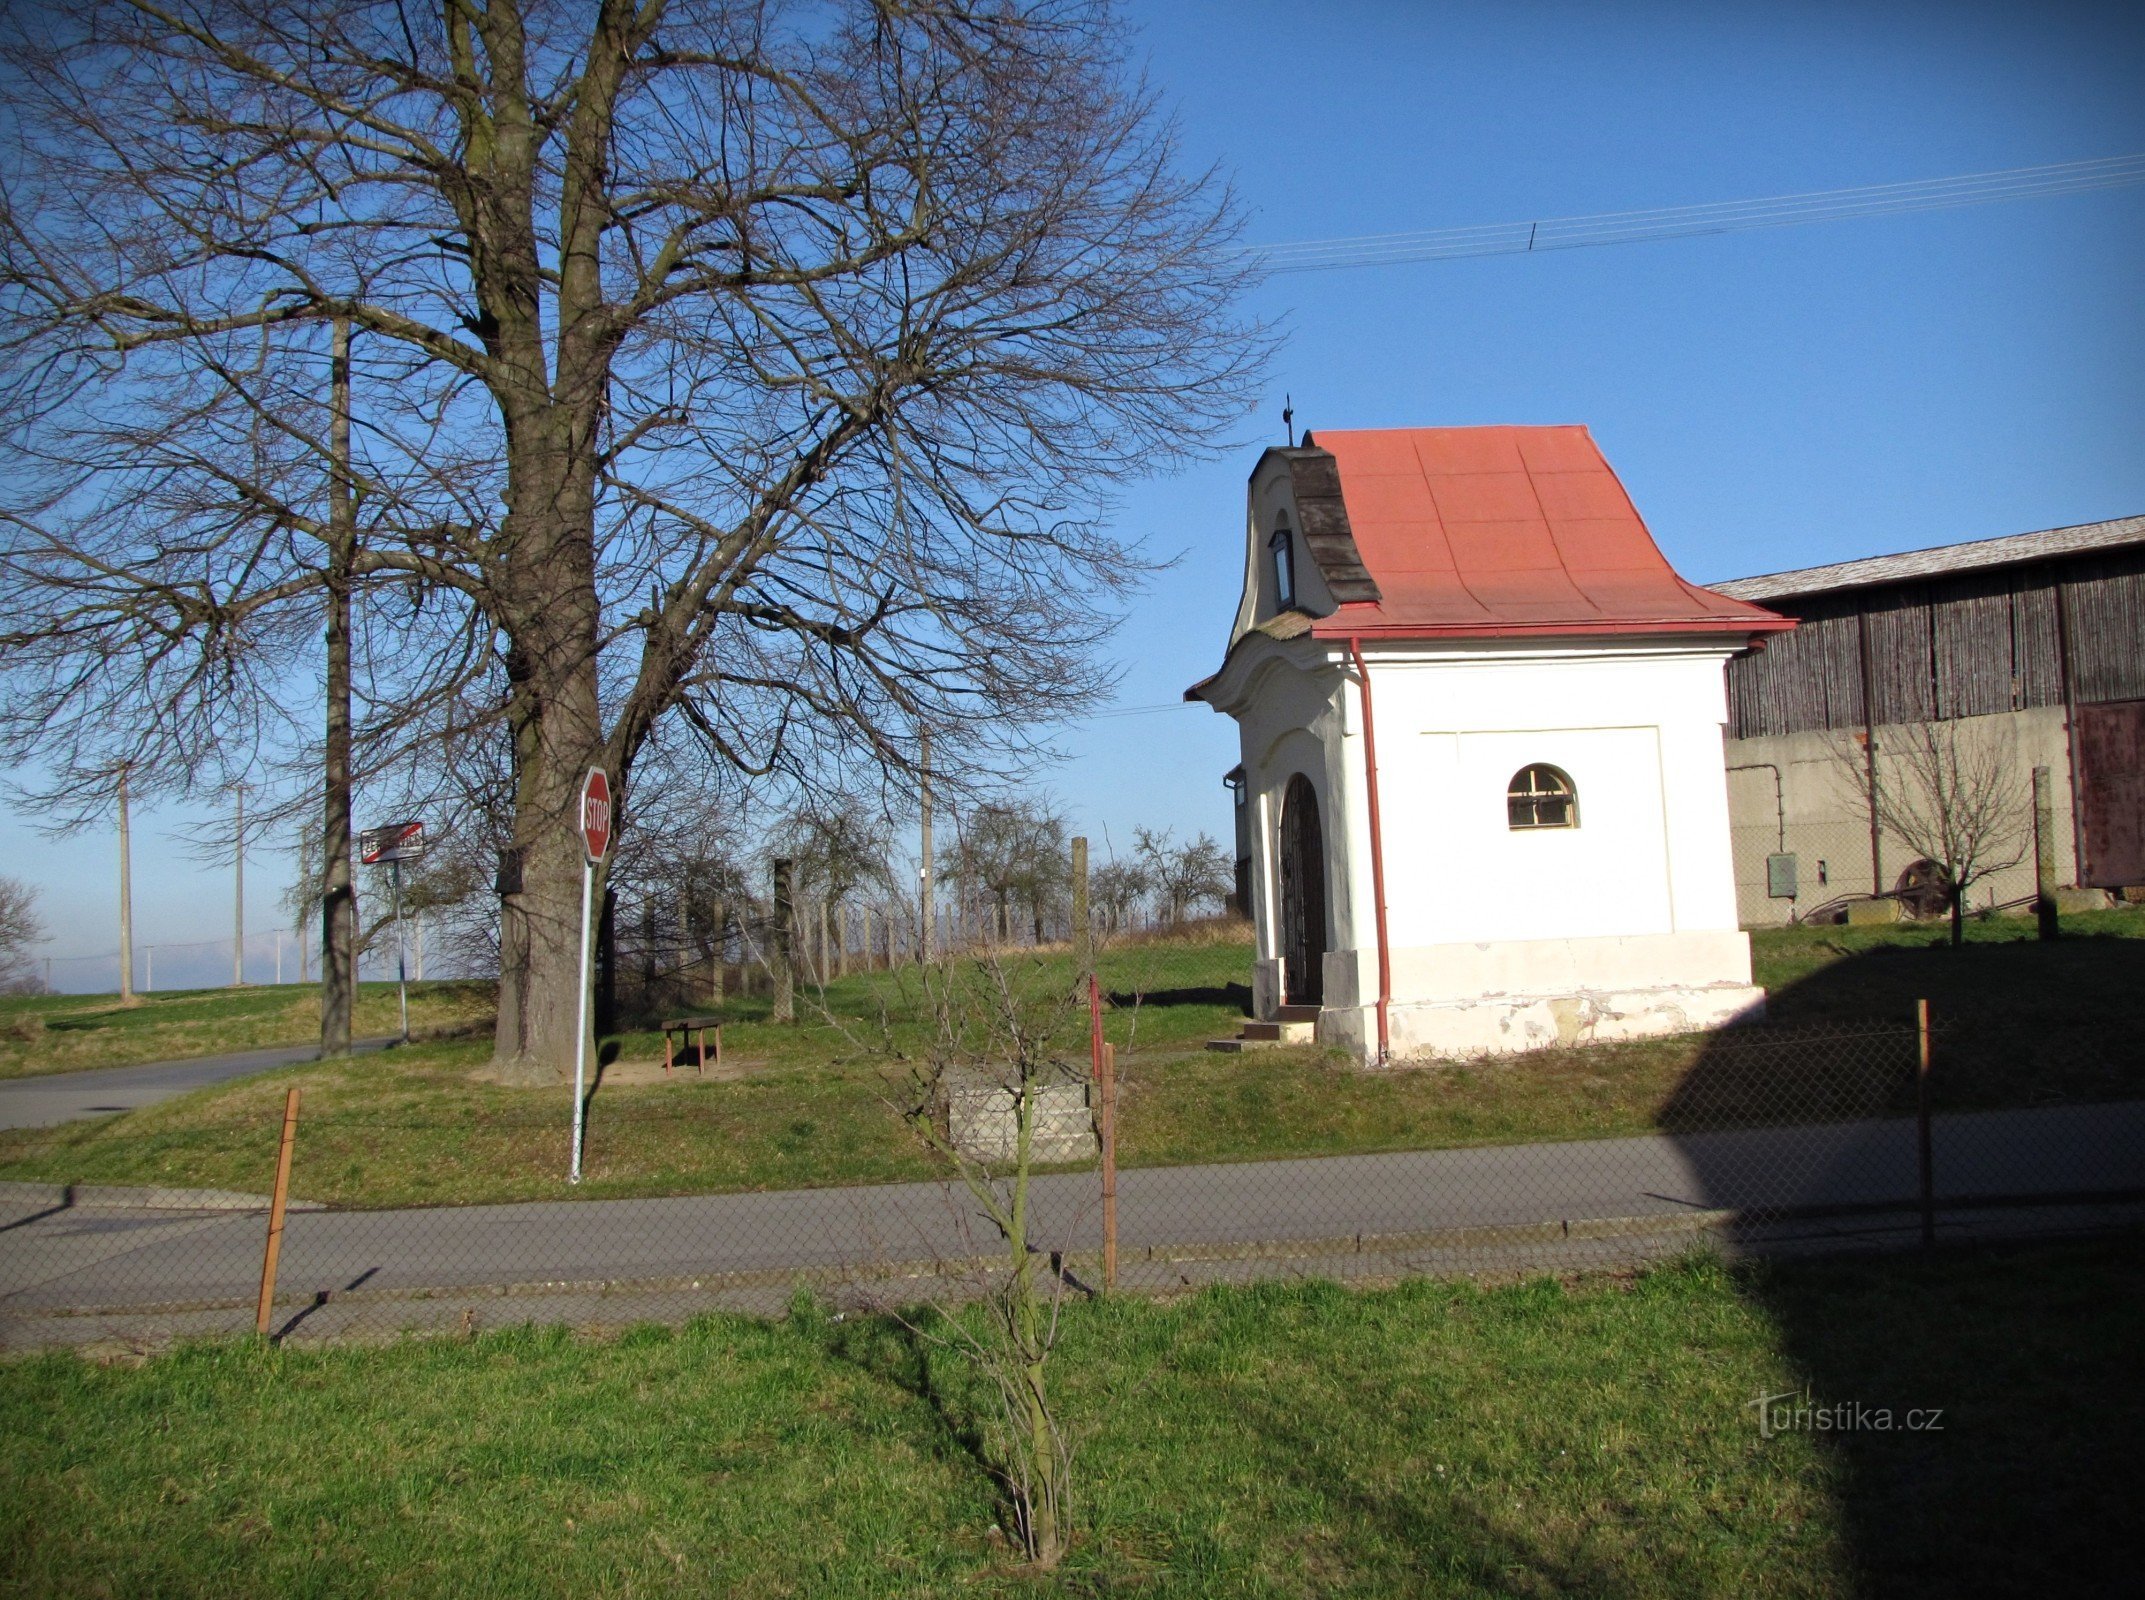 Žeranovice - nhà nguyện của Thánh John xứ Nepomuck